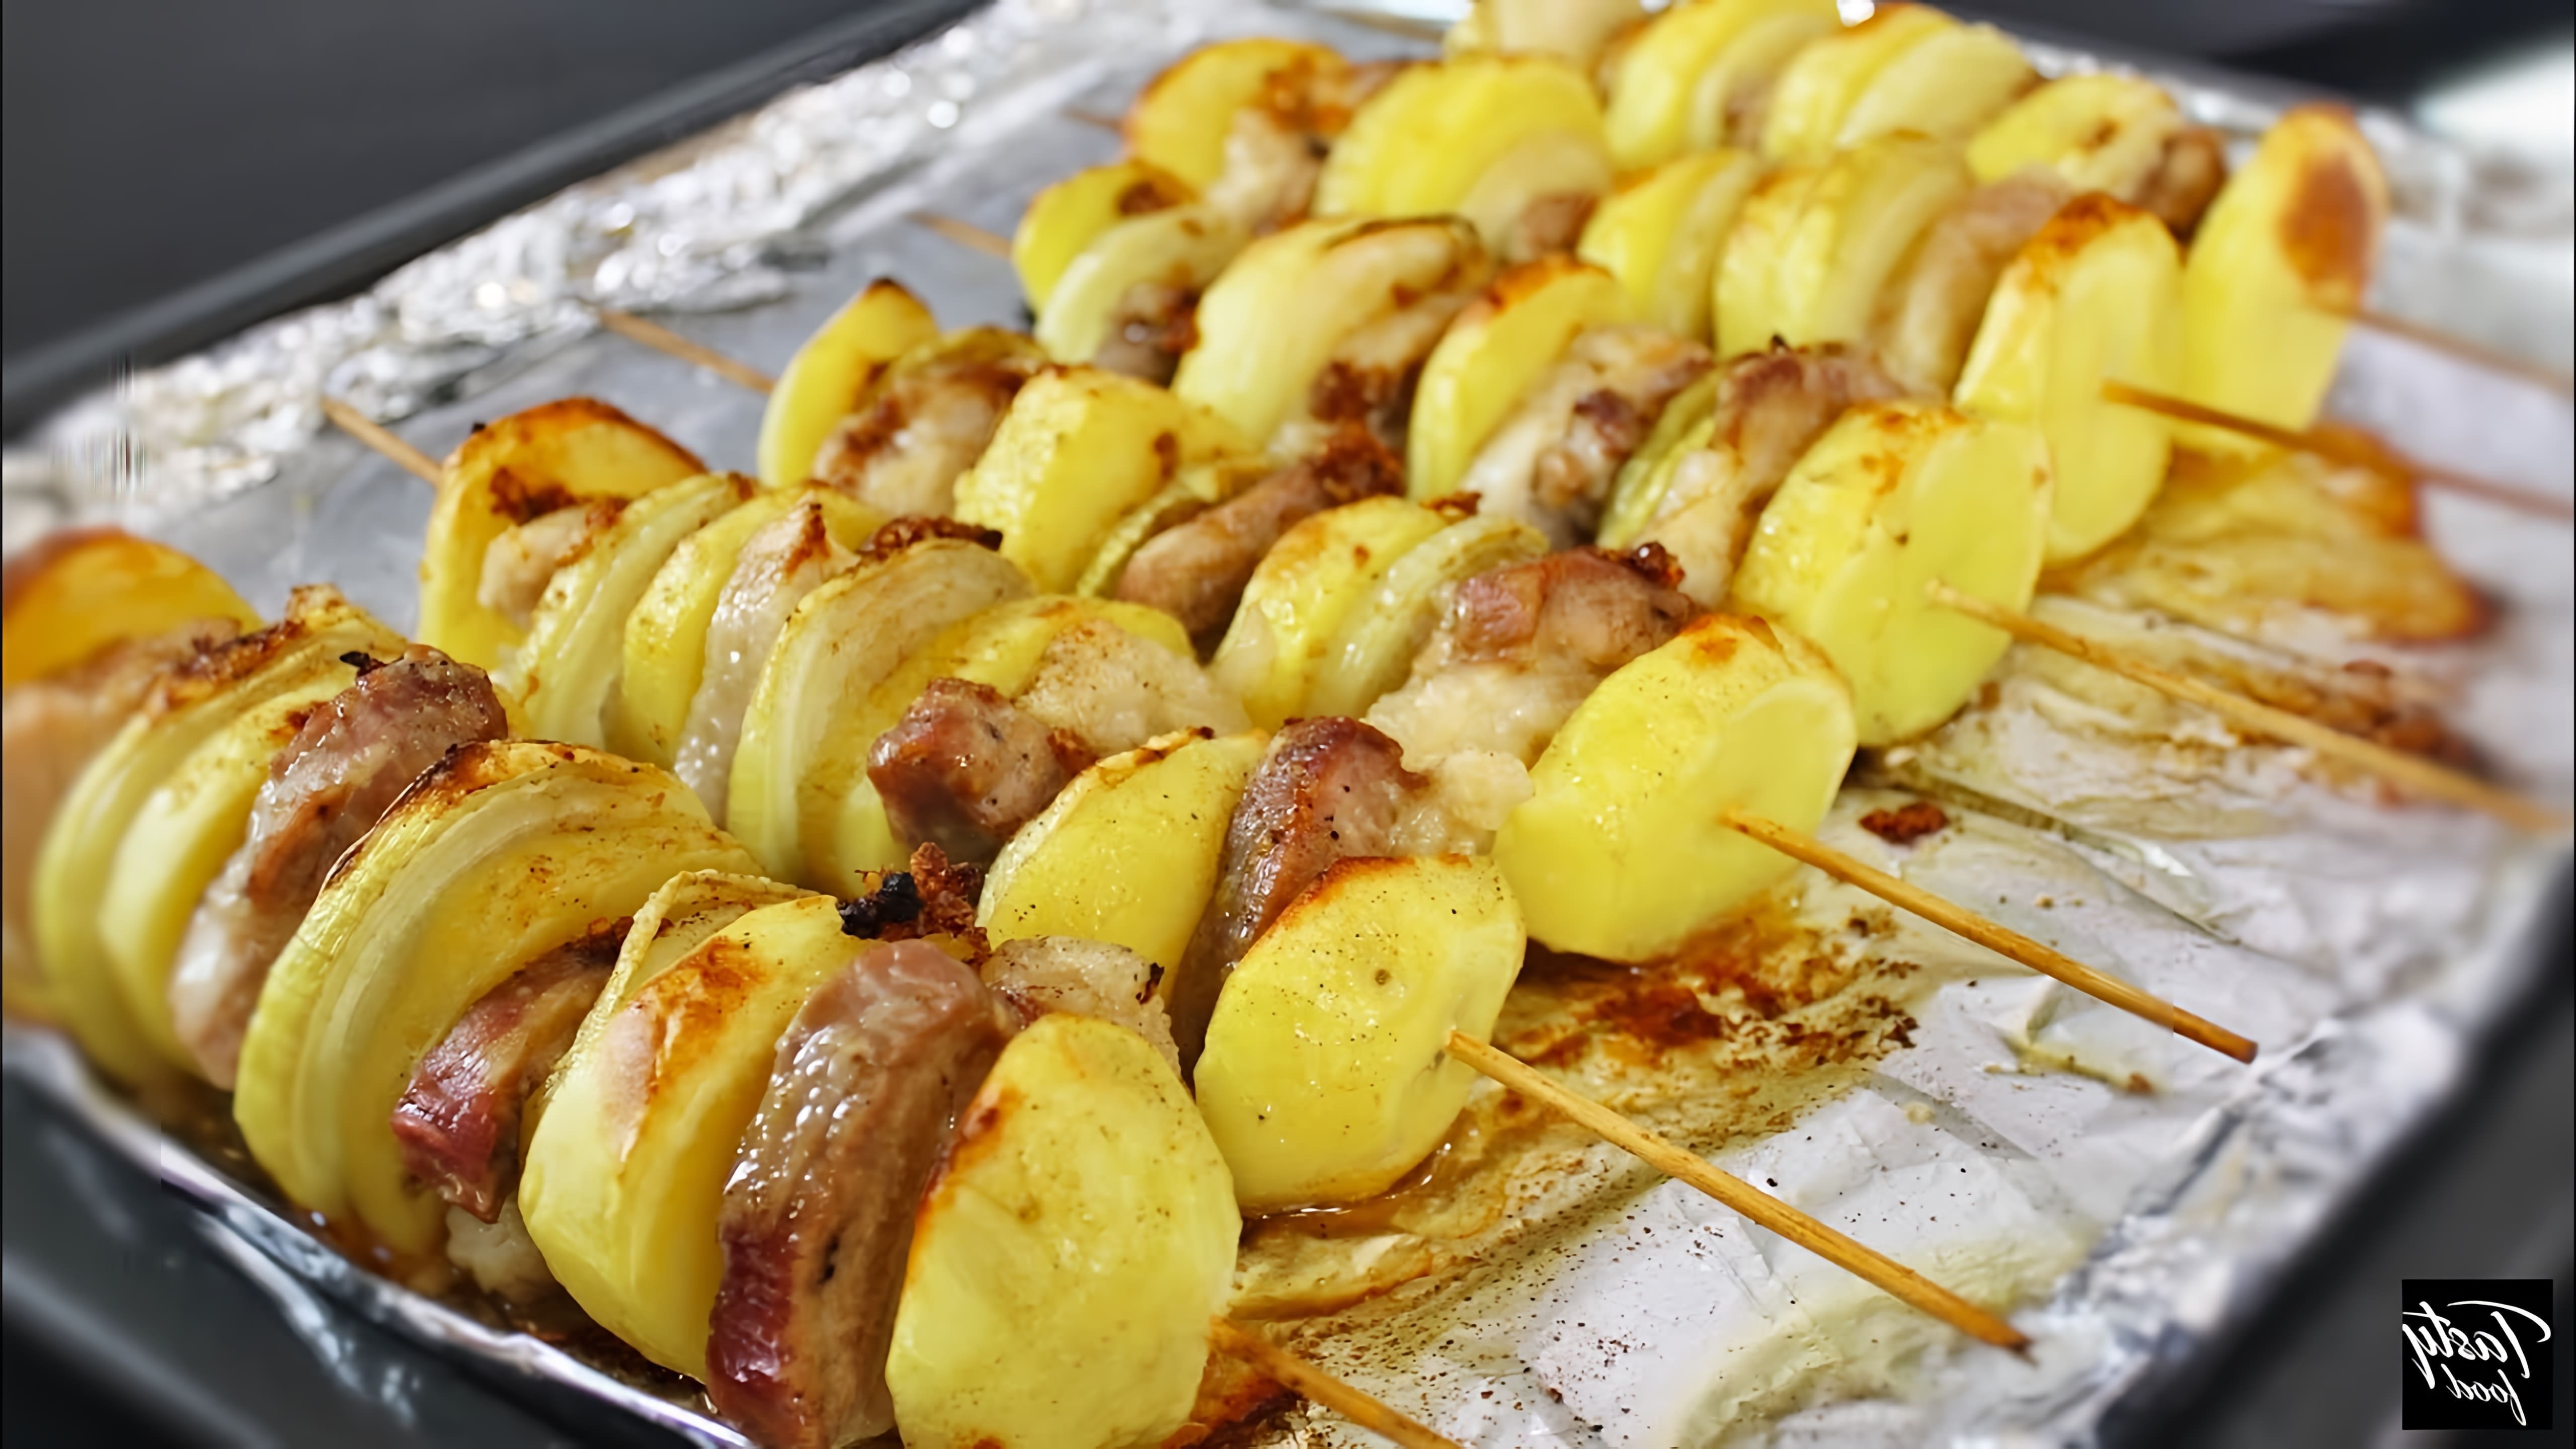 В этом видео демонстрируется рецепт приготовления картофельных шашлычков